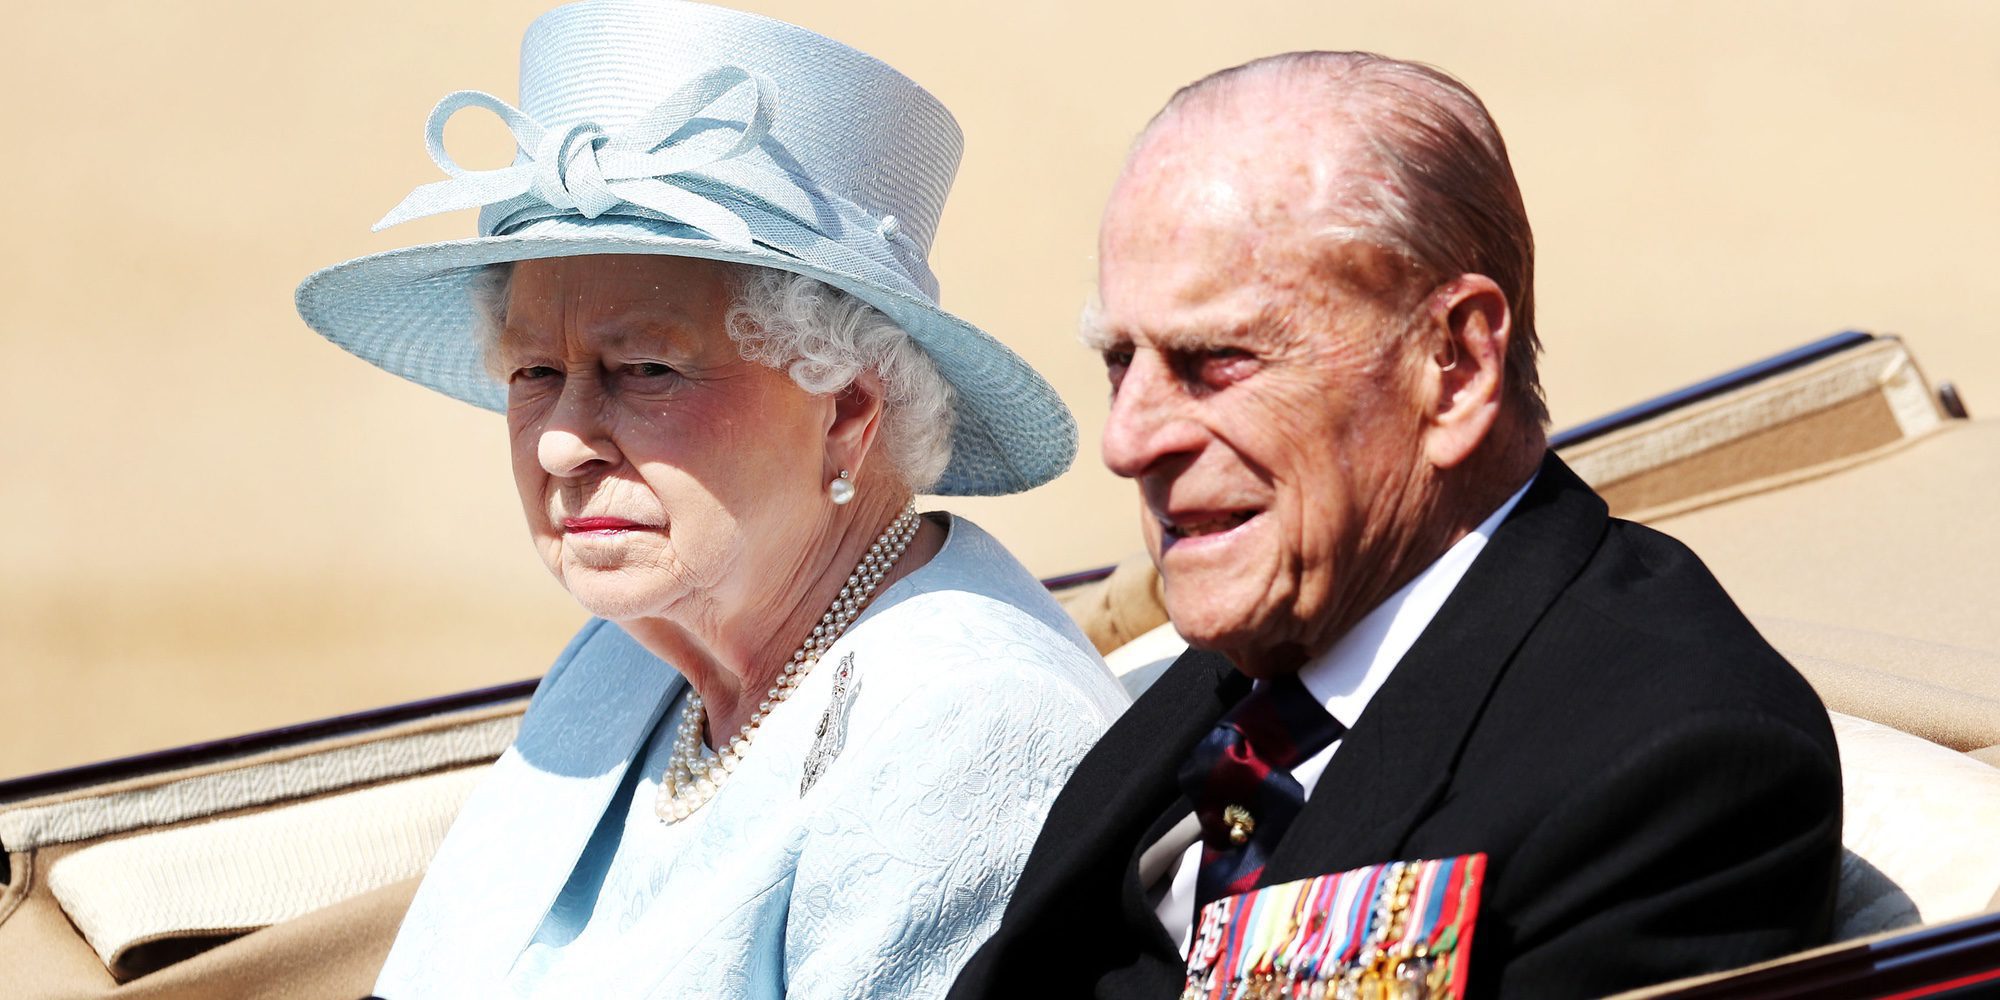 La Reina Isabel y el Duque de Edimburgo: posado oficial antes de su 70 aniversario de boda